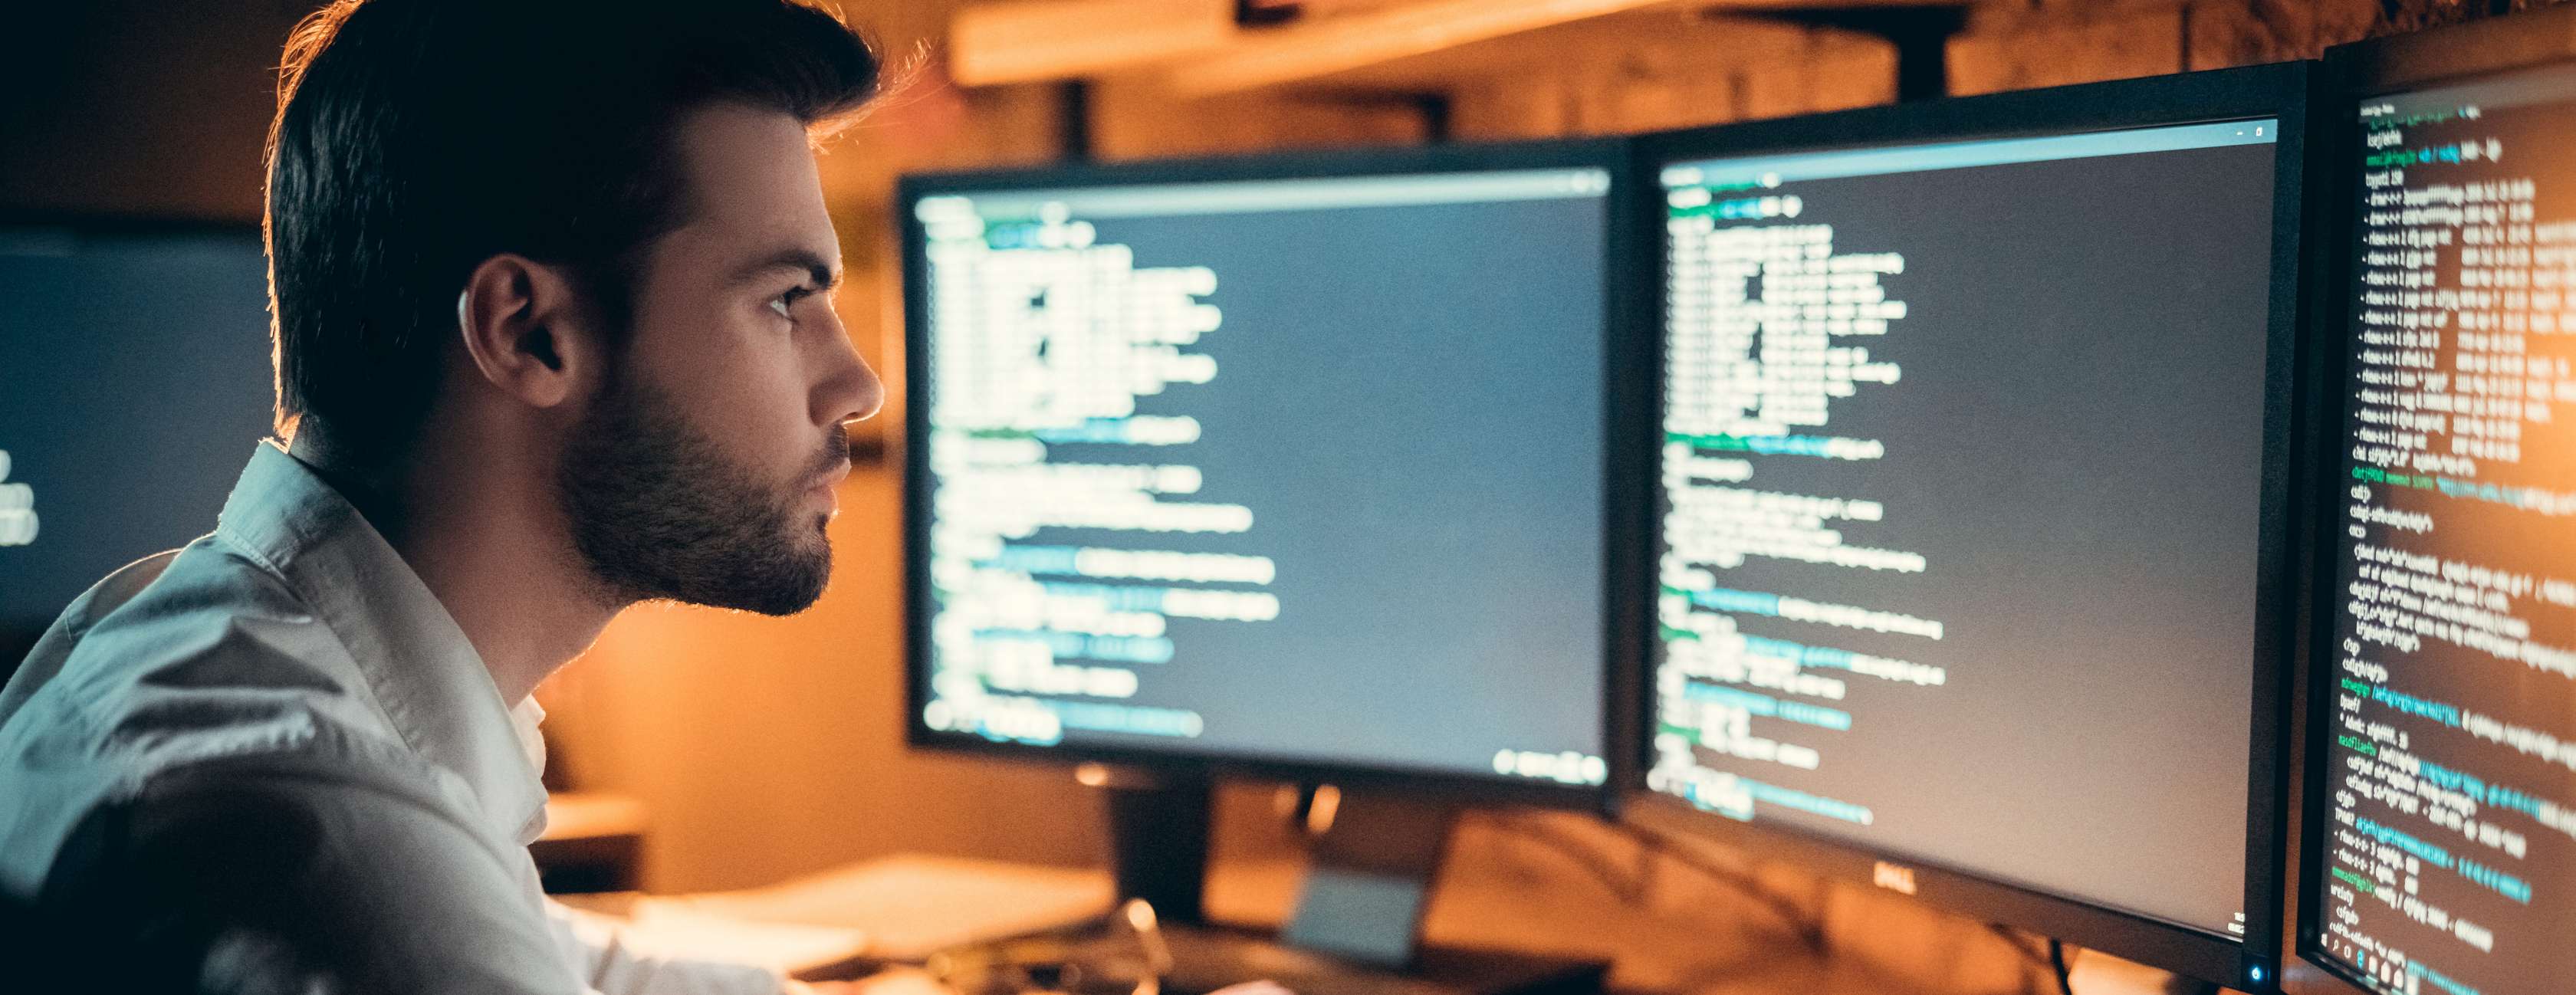 Mann schaut auf Bildschirme mit Code